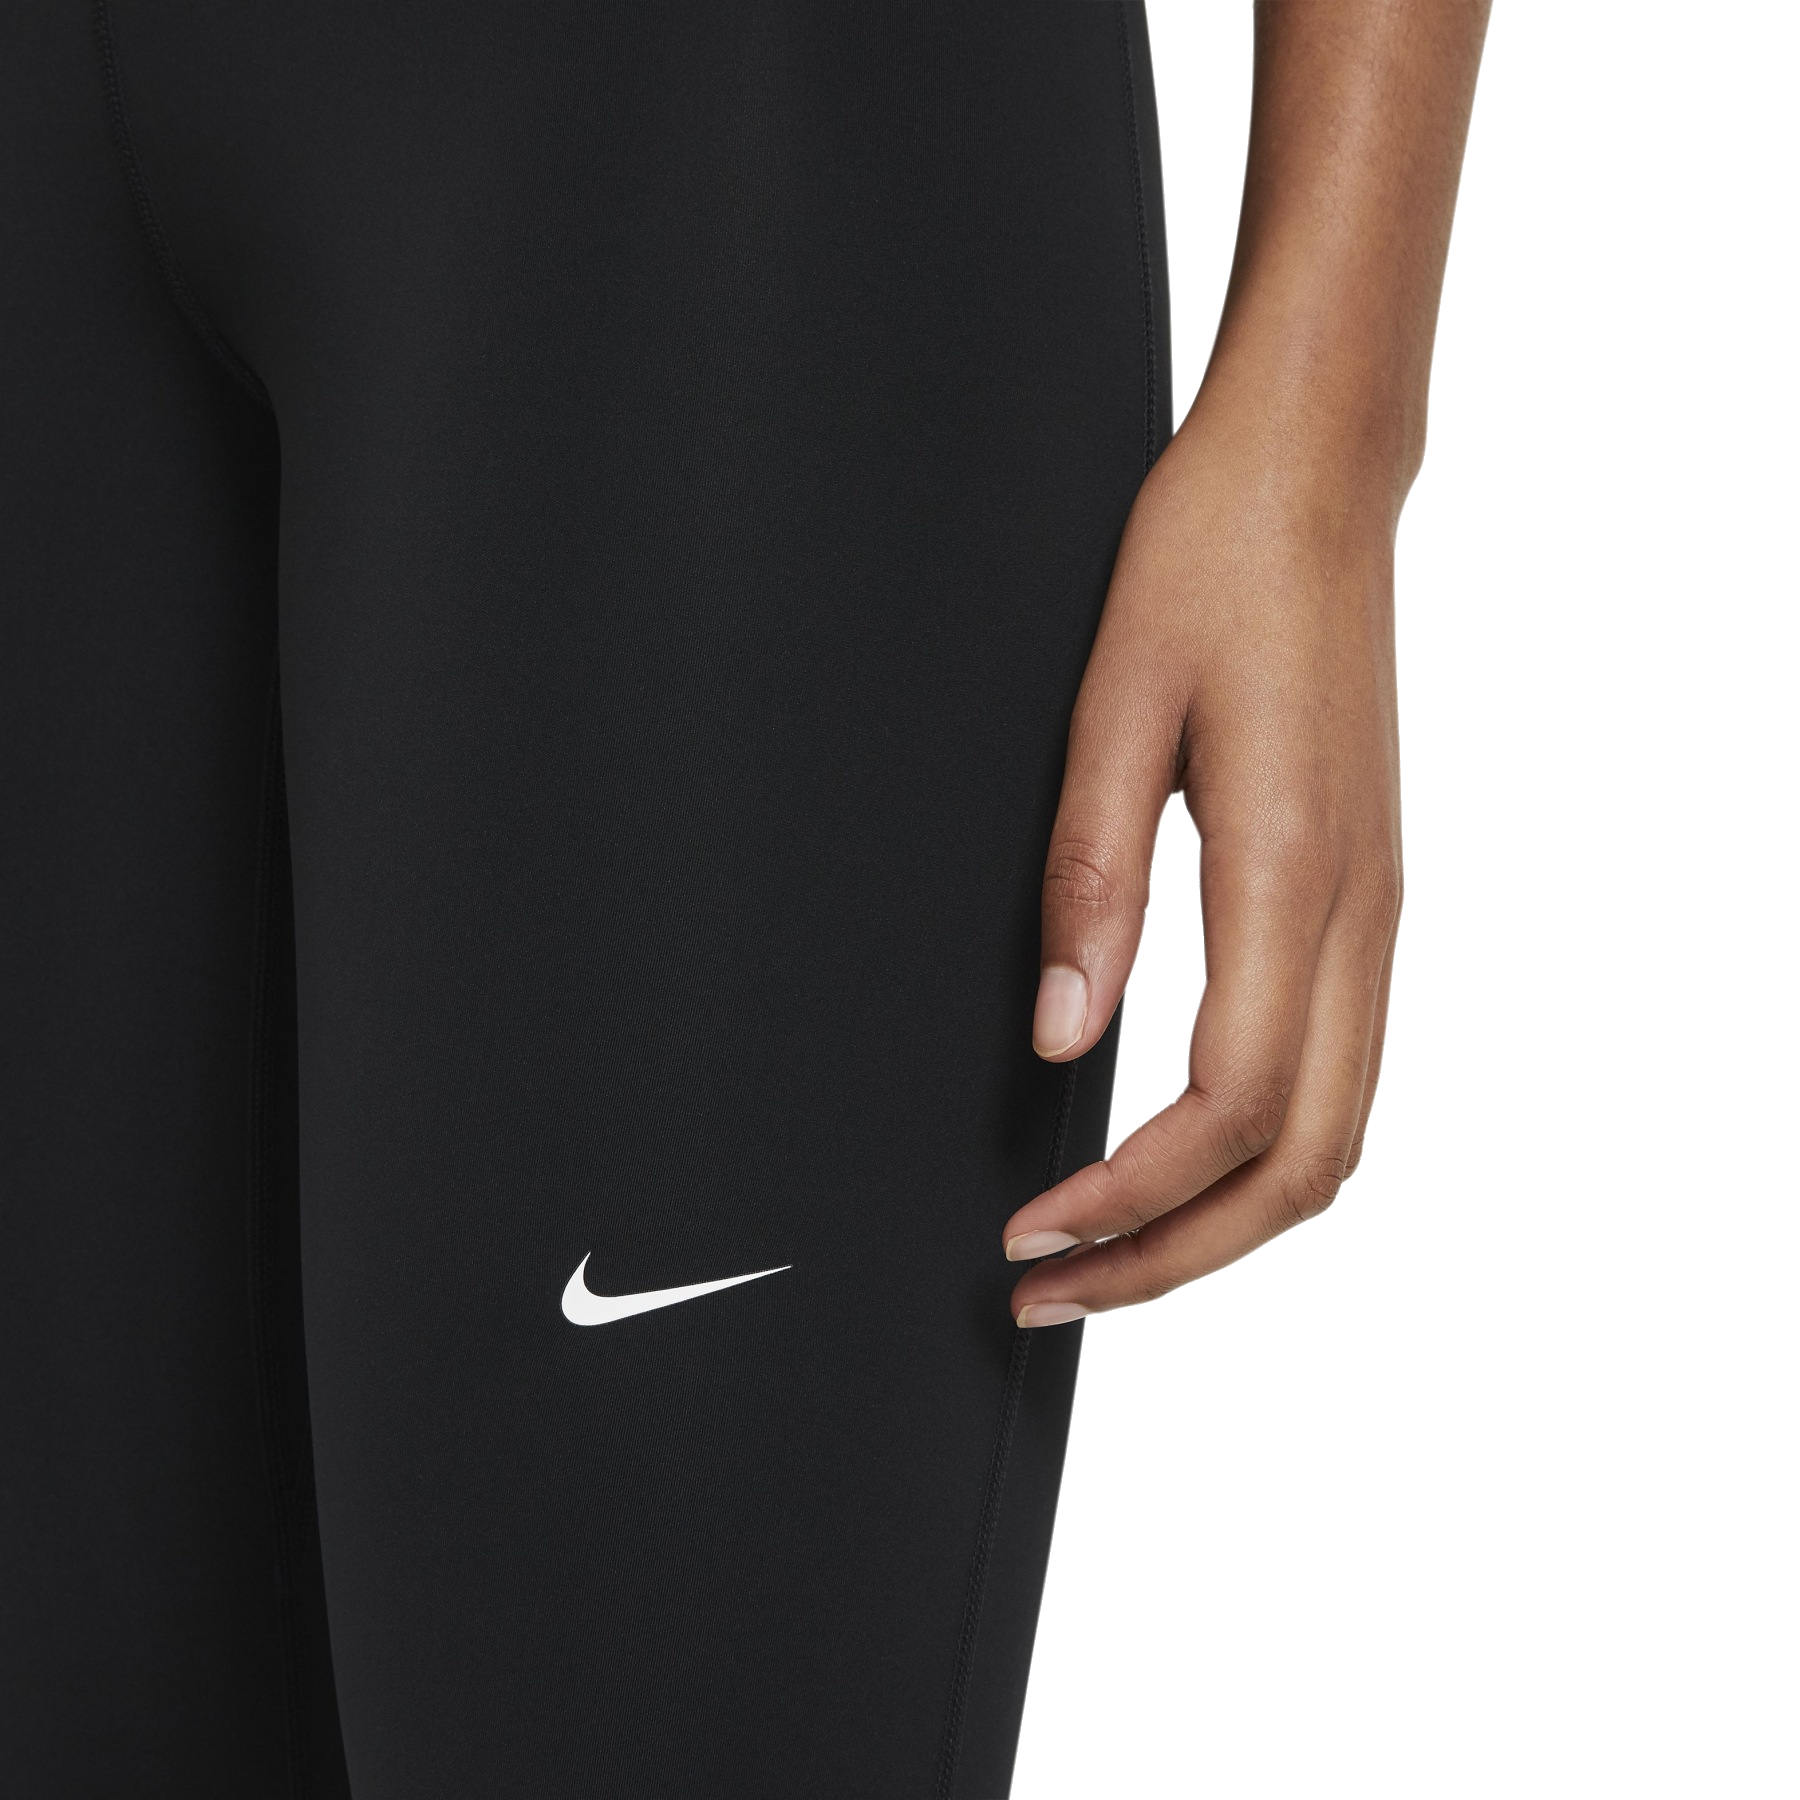 Nike Womens Nike Pro Femme Leggings - Black